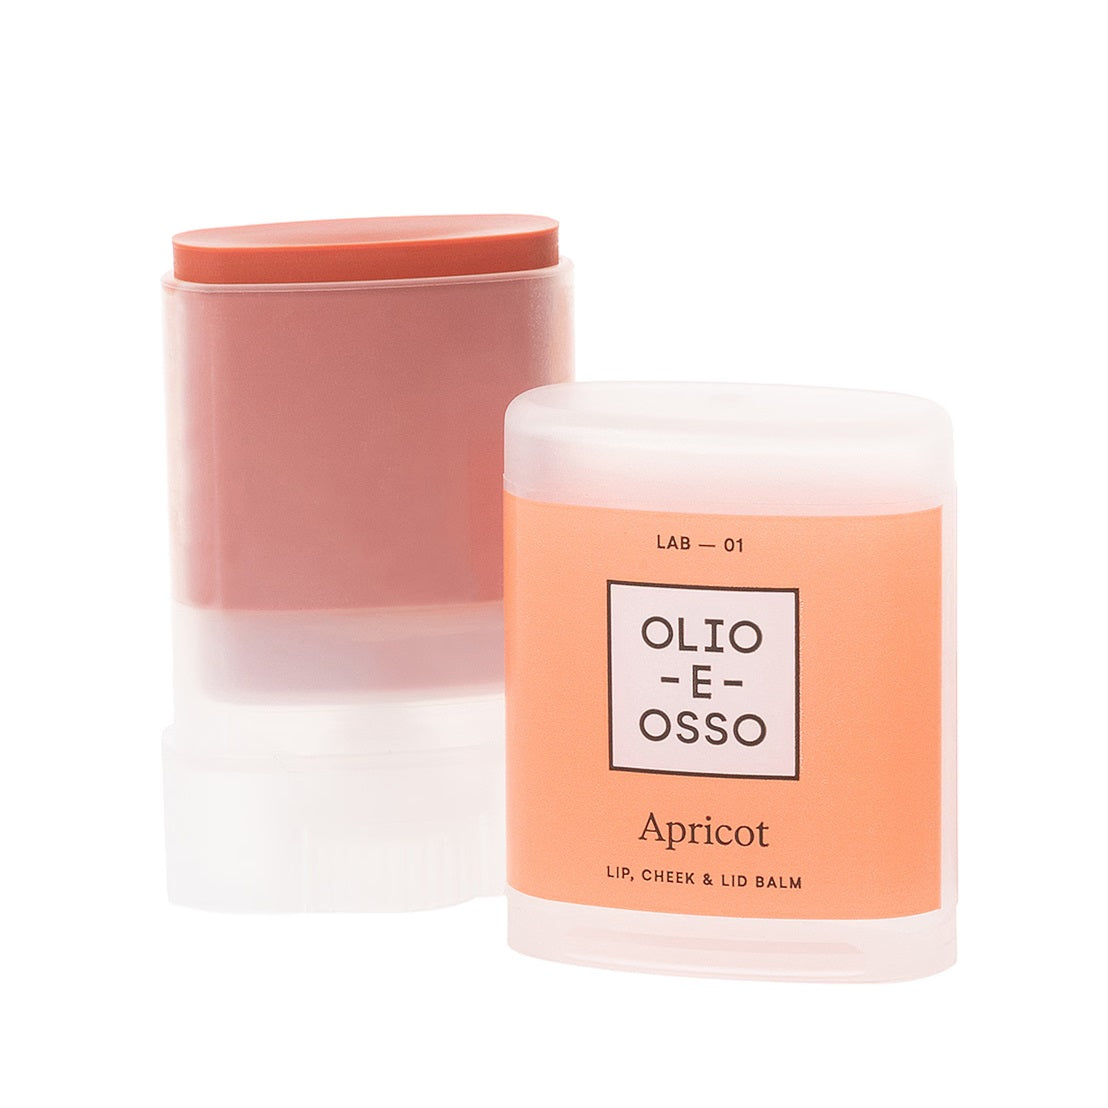 Olio E Osso Lip, Cheek & Lid Balm 10g - Apricot